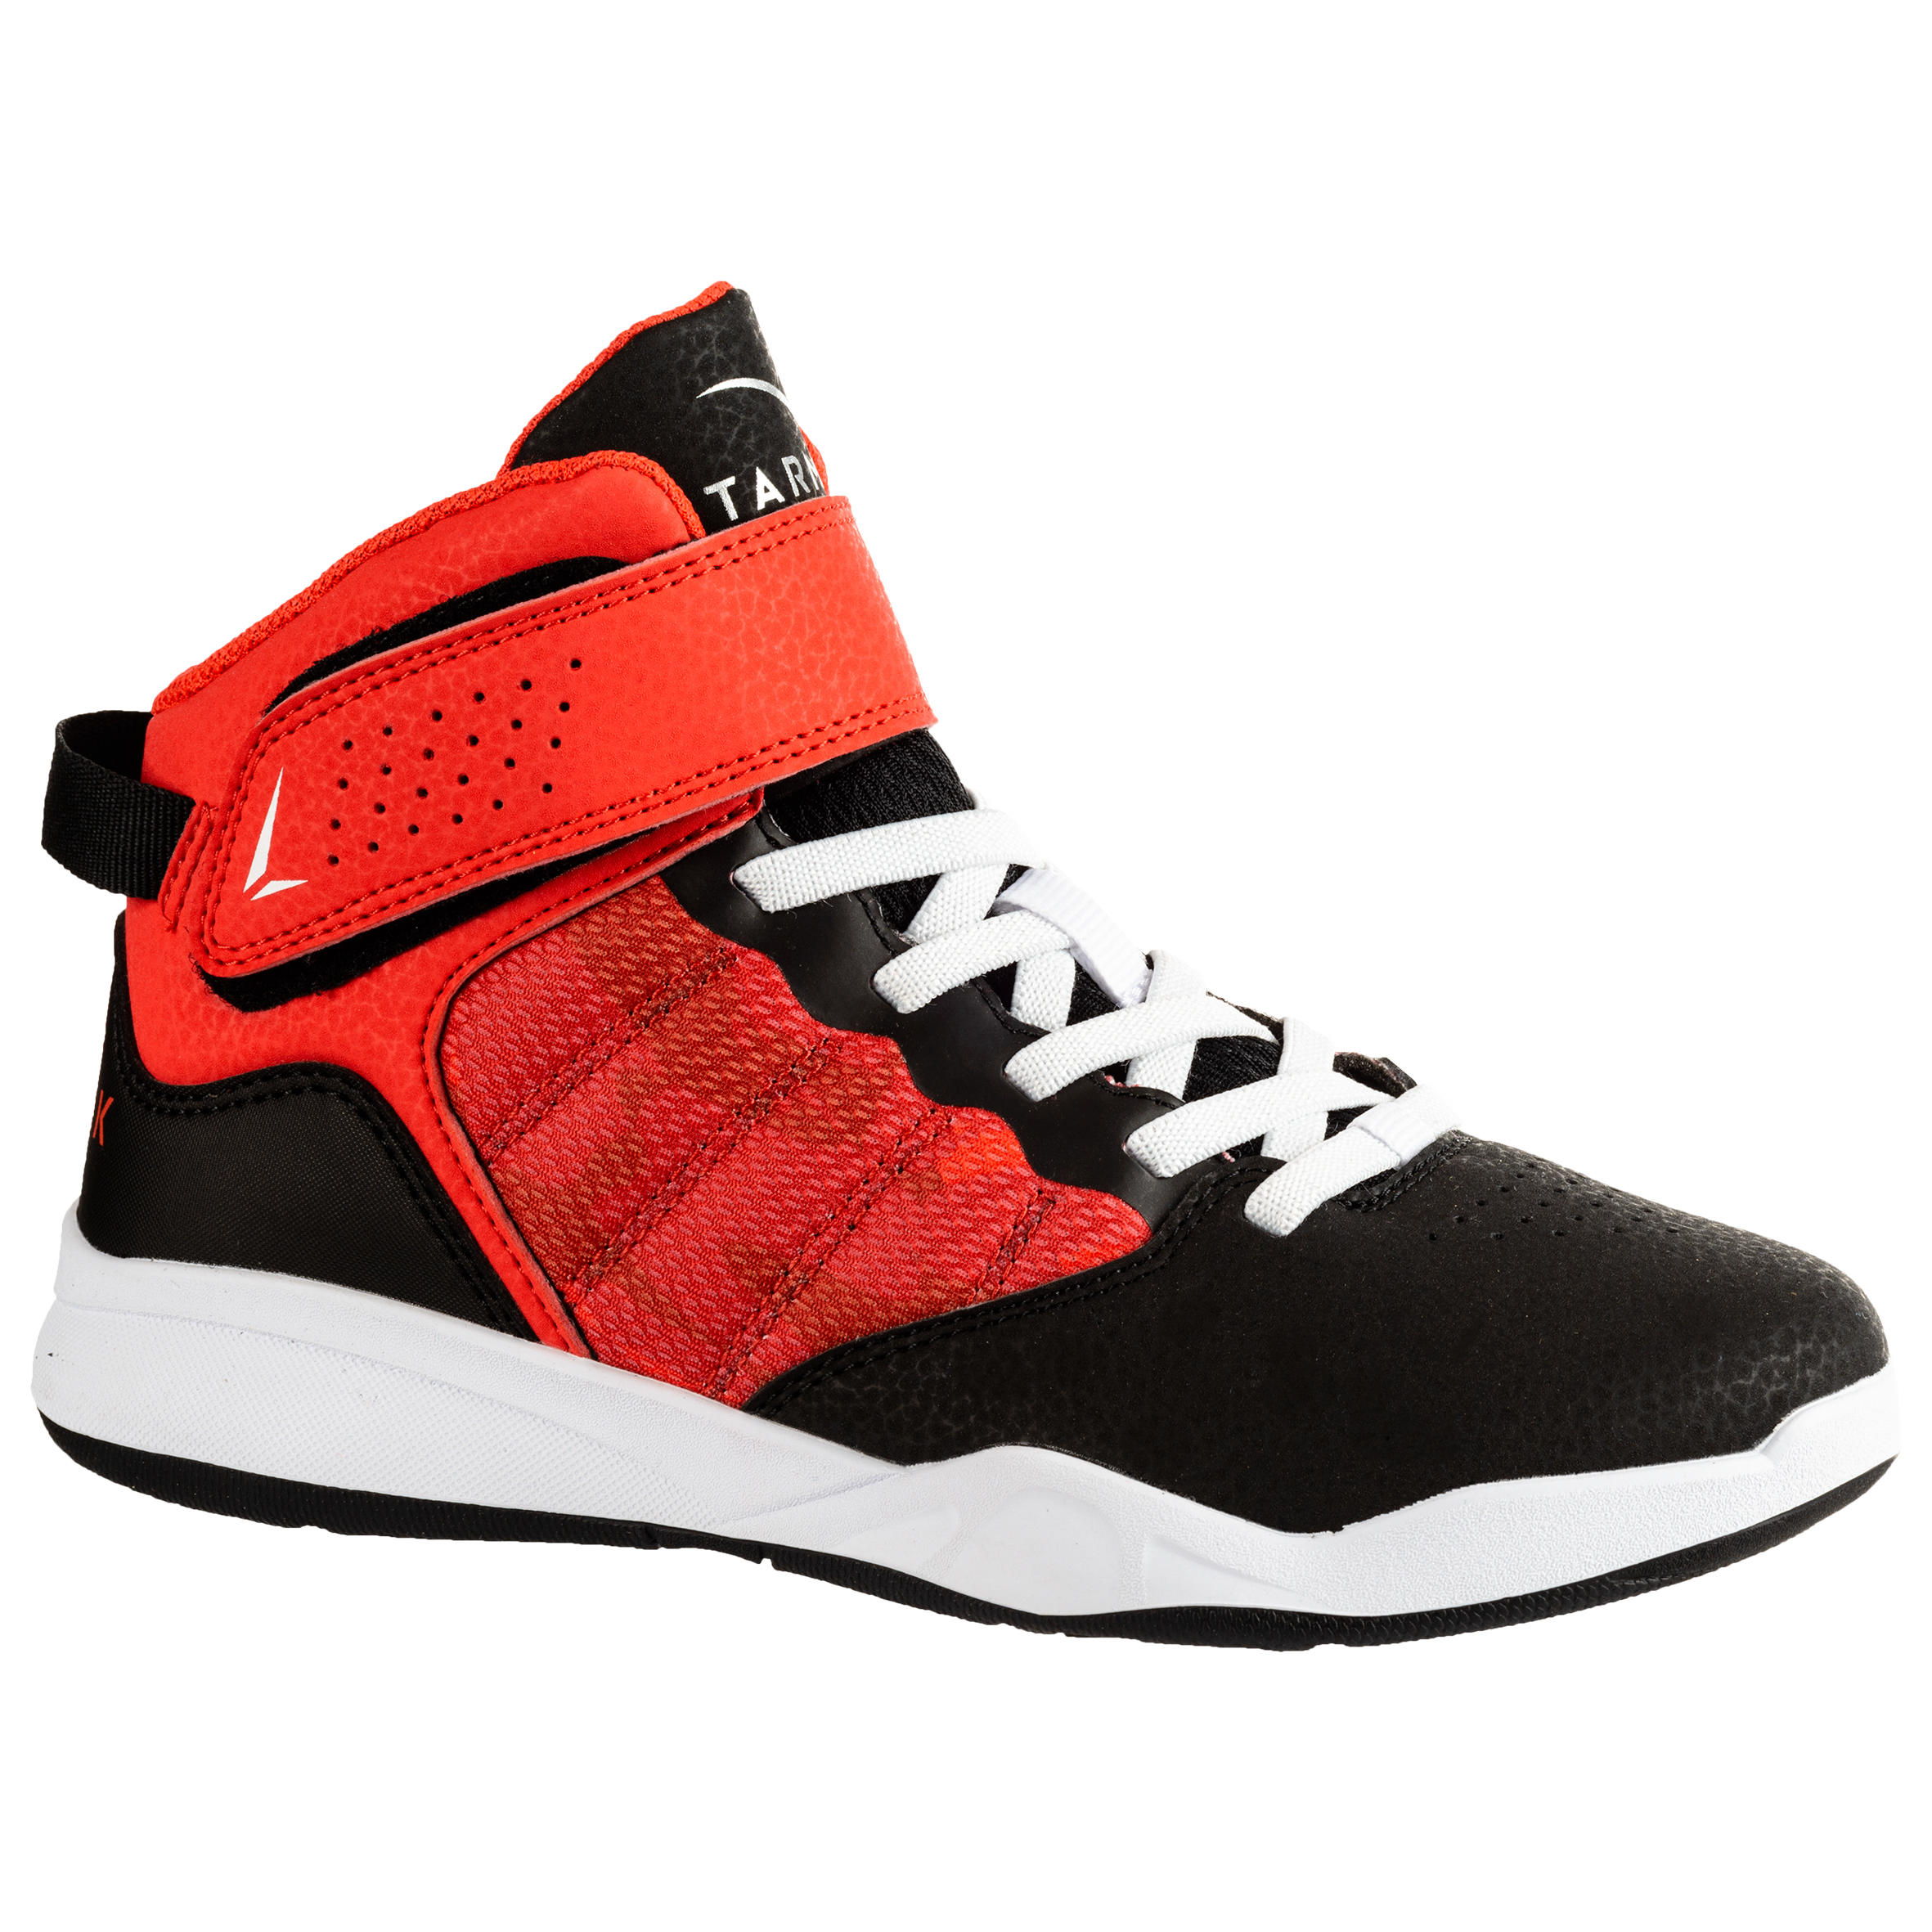 Chaussures de basketball enfant – SE 100 noir/rouge - TARMAK